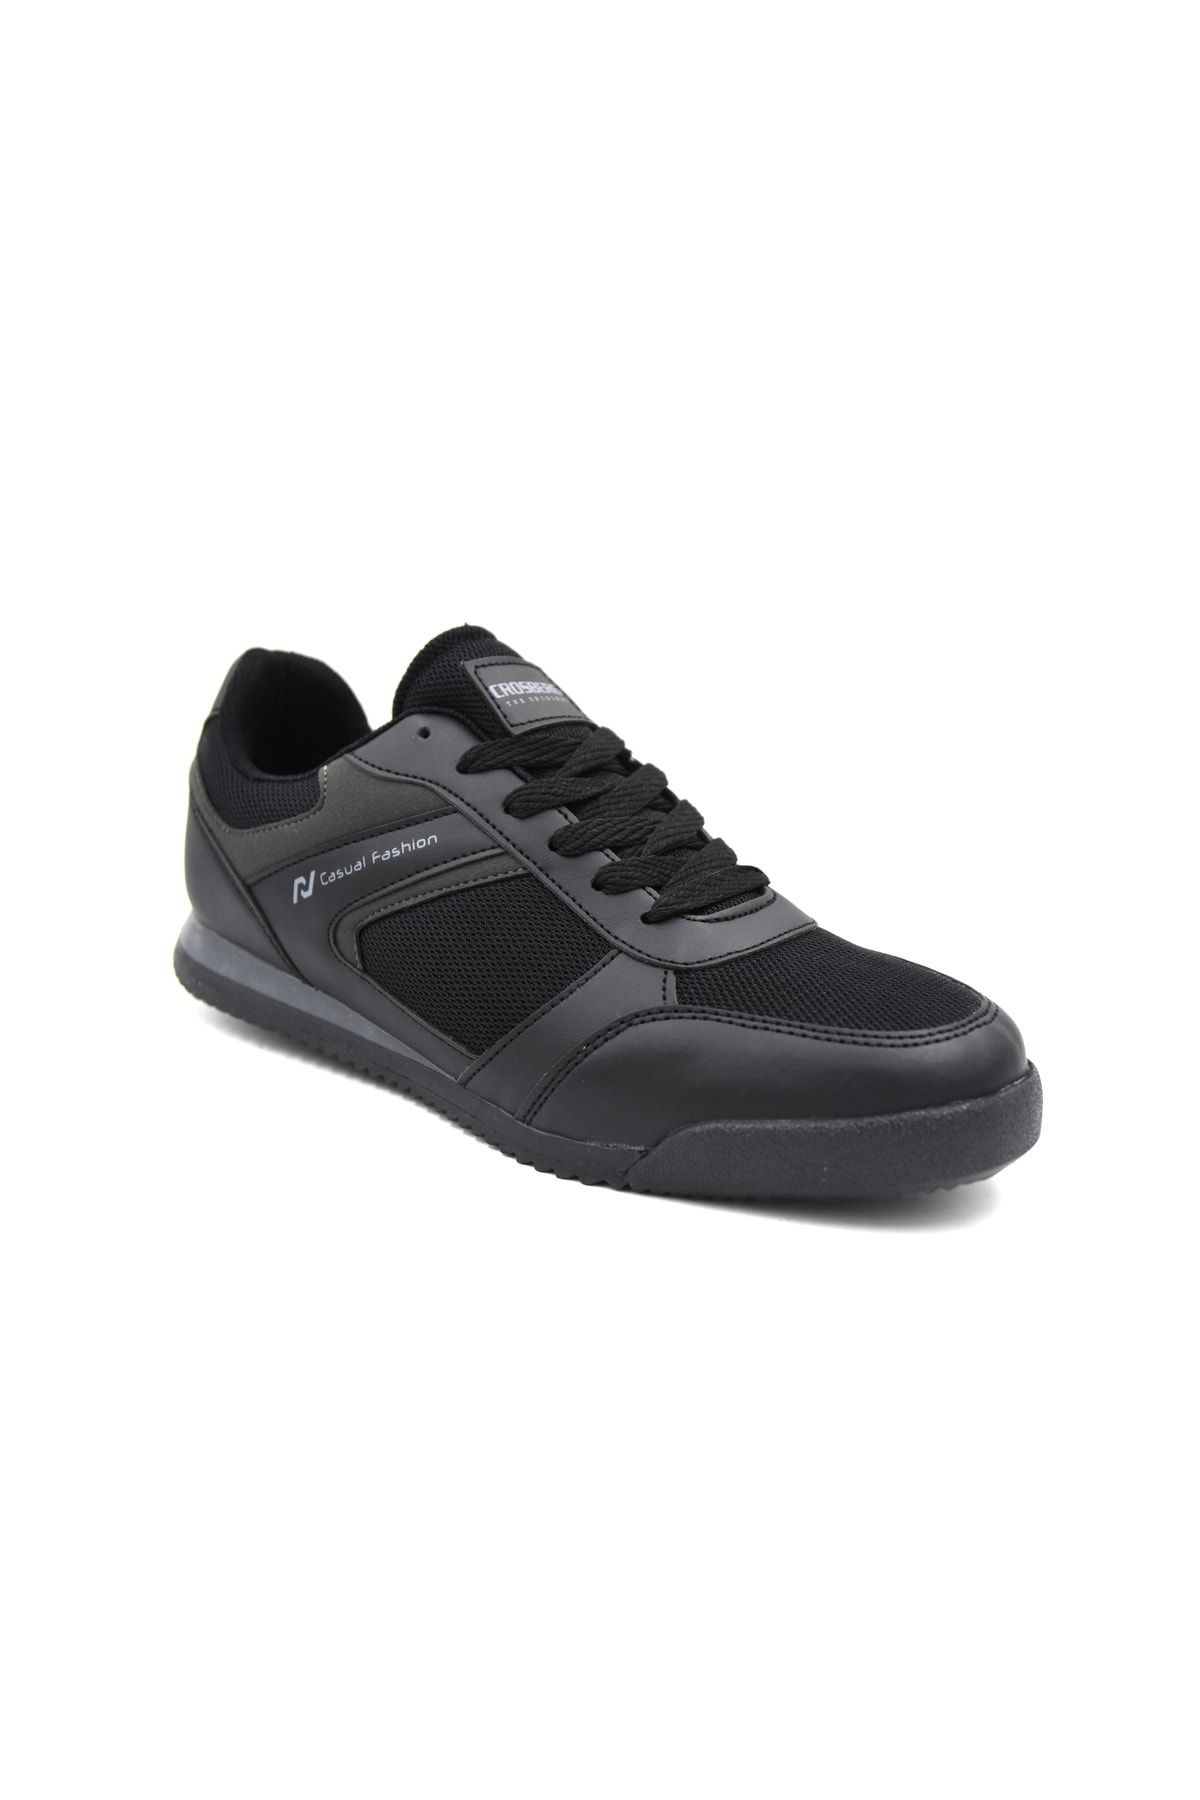 Prego Crosberg Bağcıklı Erkek Spor Ayakkabı Siyah